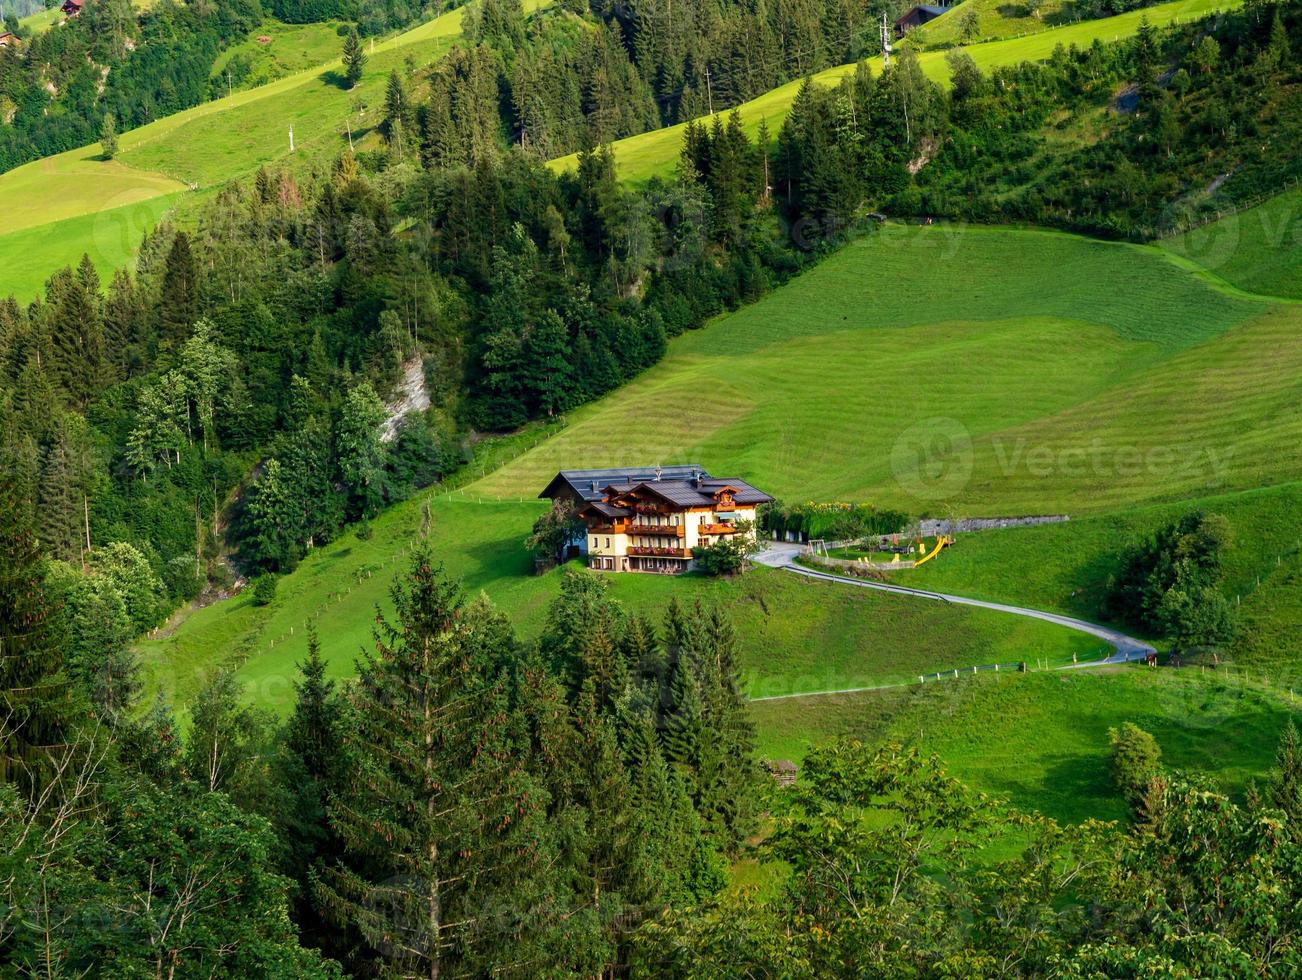 gröna kullar i en alpin semesterort i Österrike på sommaren. liten by, hotell och stugor, allt i färger. vackra terrasser och solpaneler på taken. civilisationens närhet och den rena naturen. foto